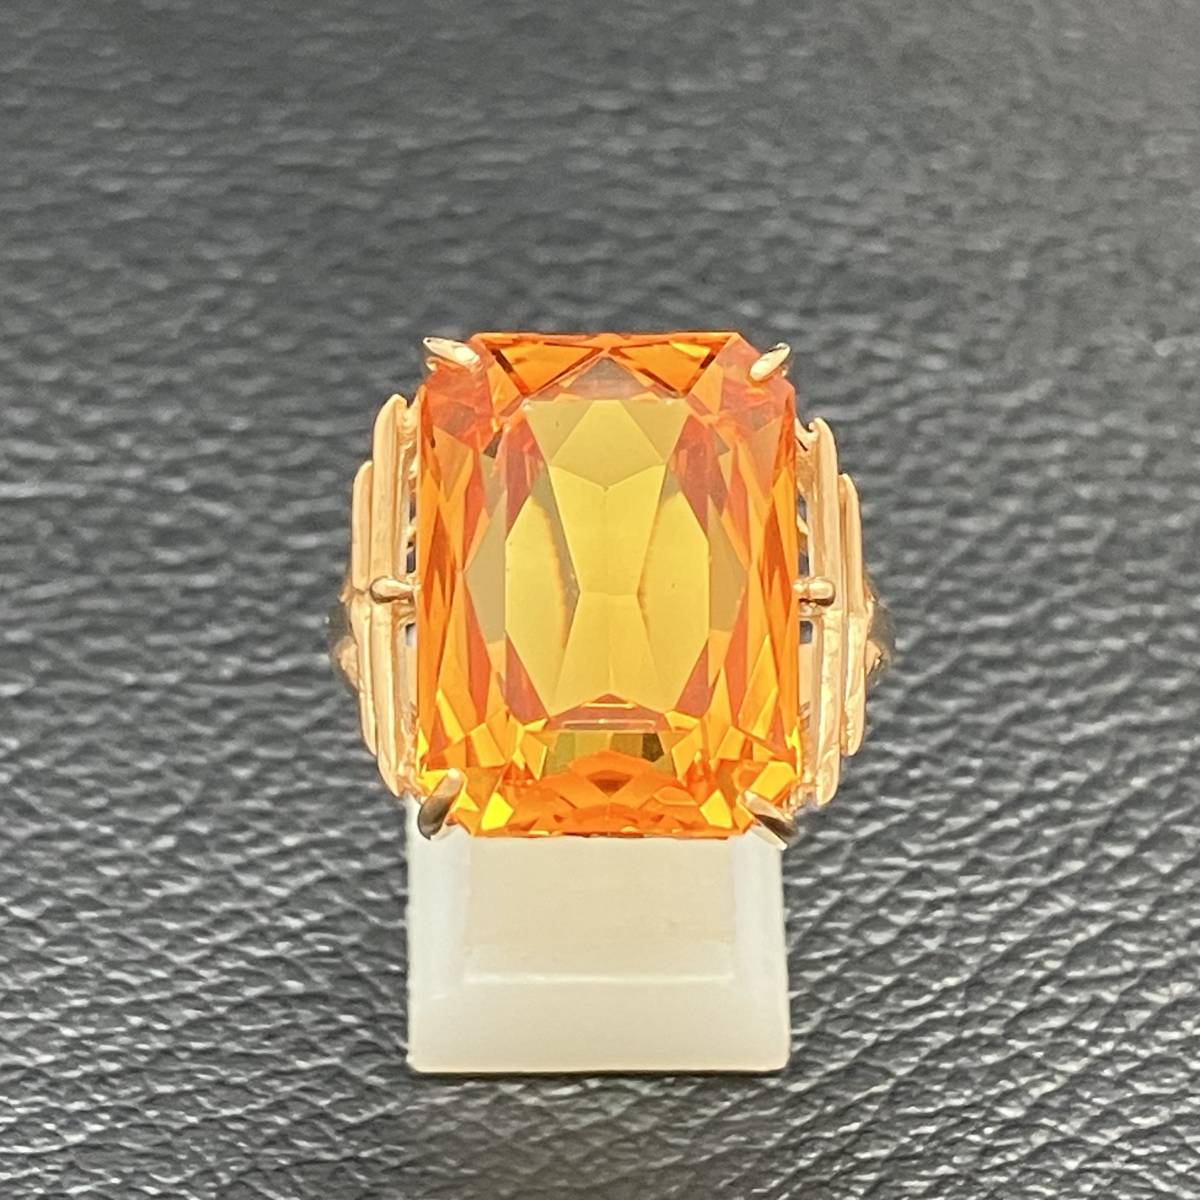 新品仕上済み オレンジ 石 デザイン リング K18 14号 6.8g 金 イエロー ゴールド 指輪 店舗受取可の画像2